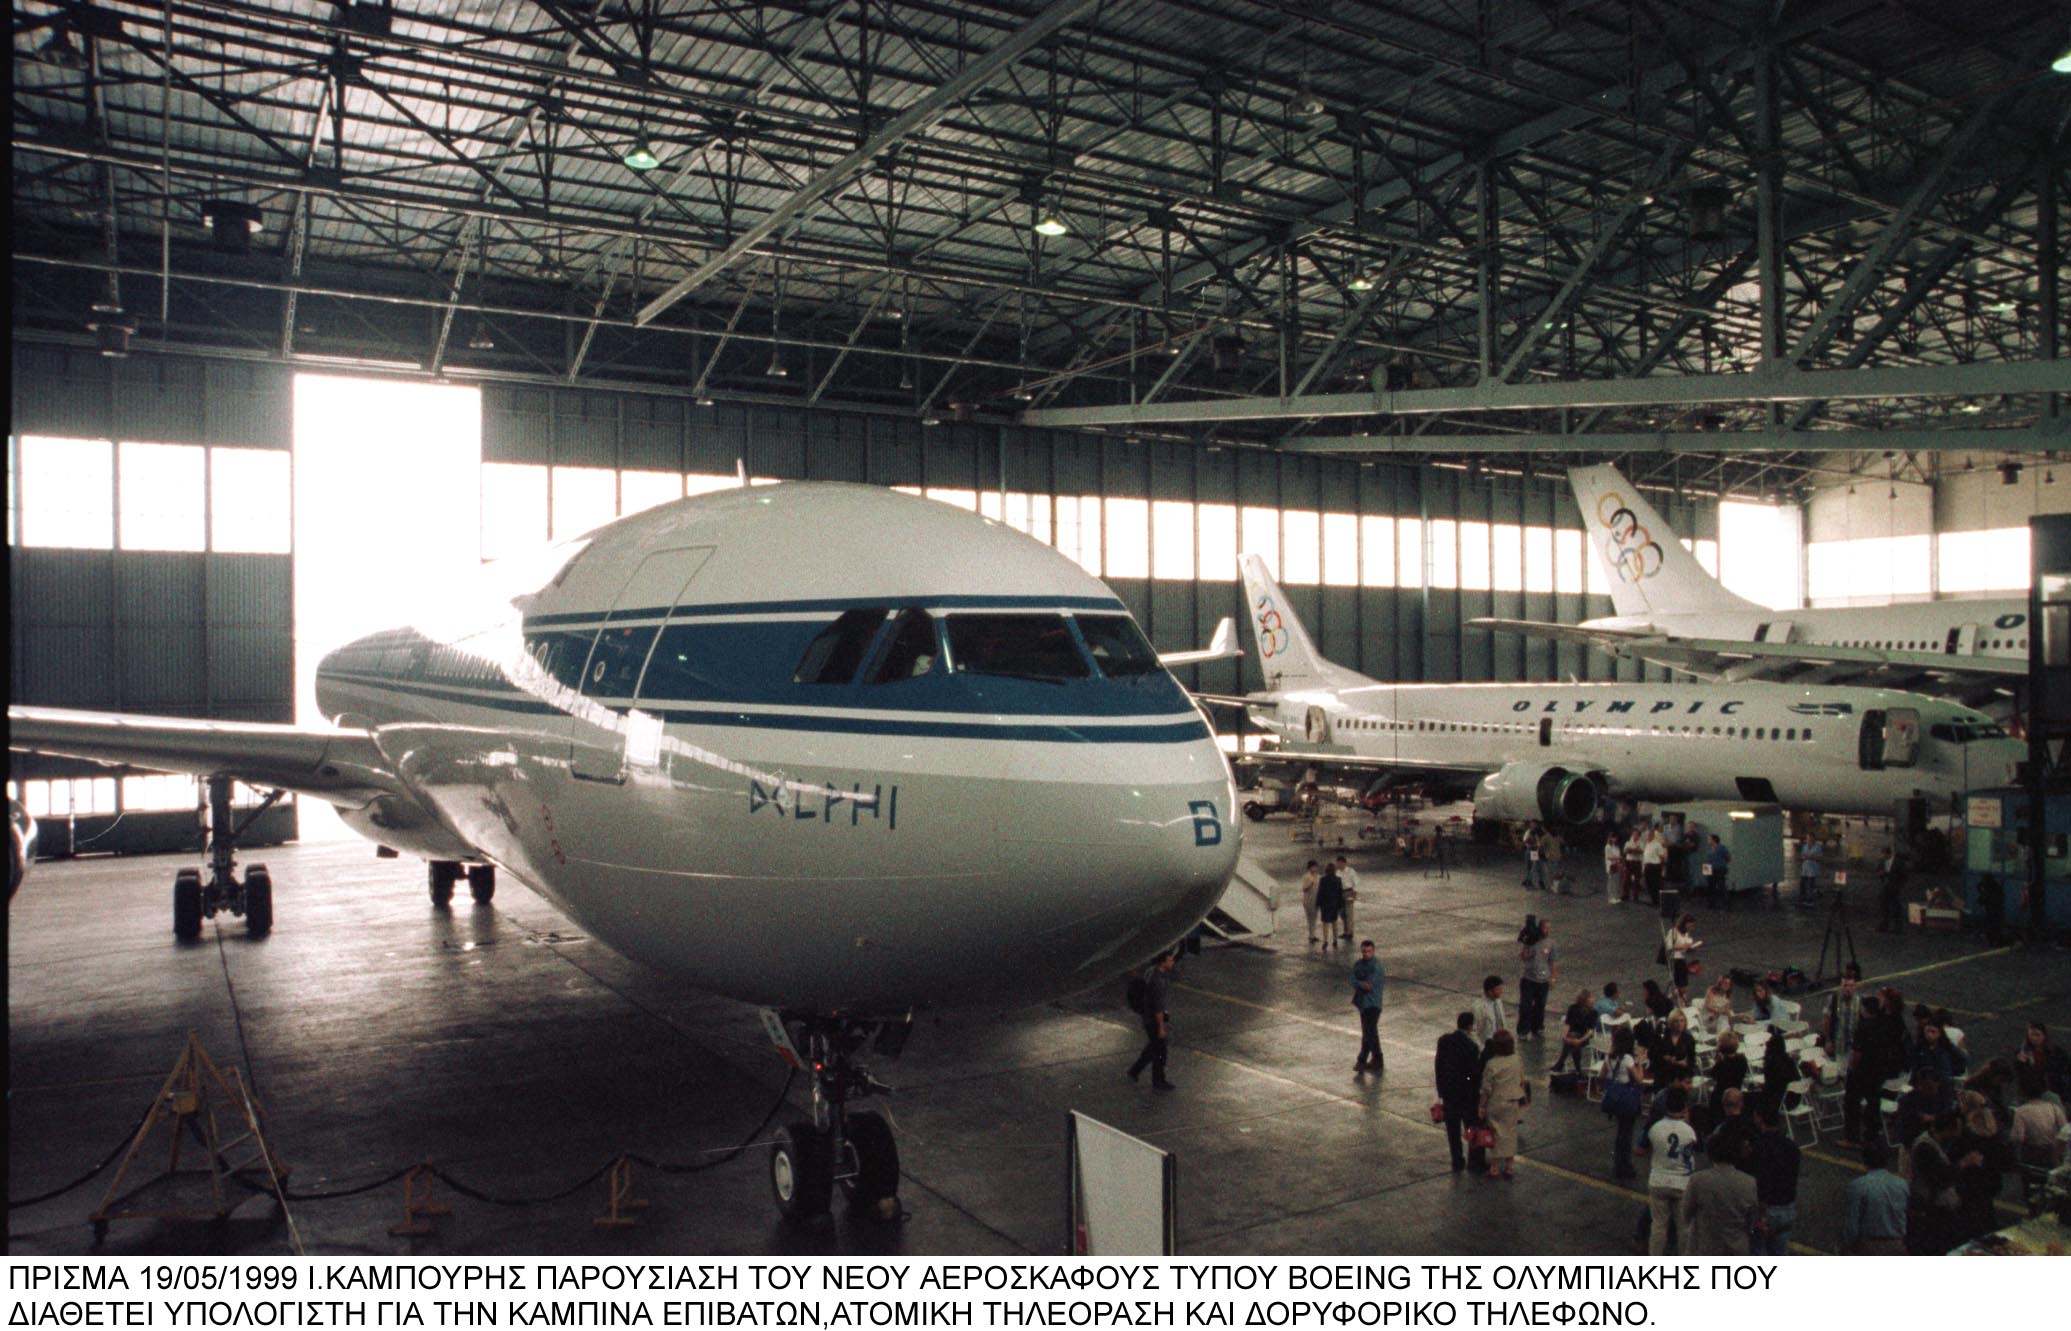 Πουλήθηκαν τα δυο Airbus 340 της Ολυμπιακής έναντι 4,2 εκατ. δολ.